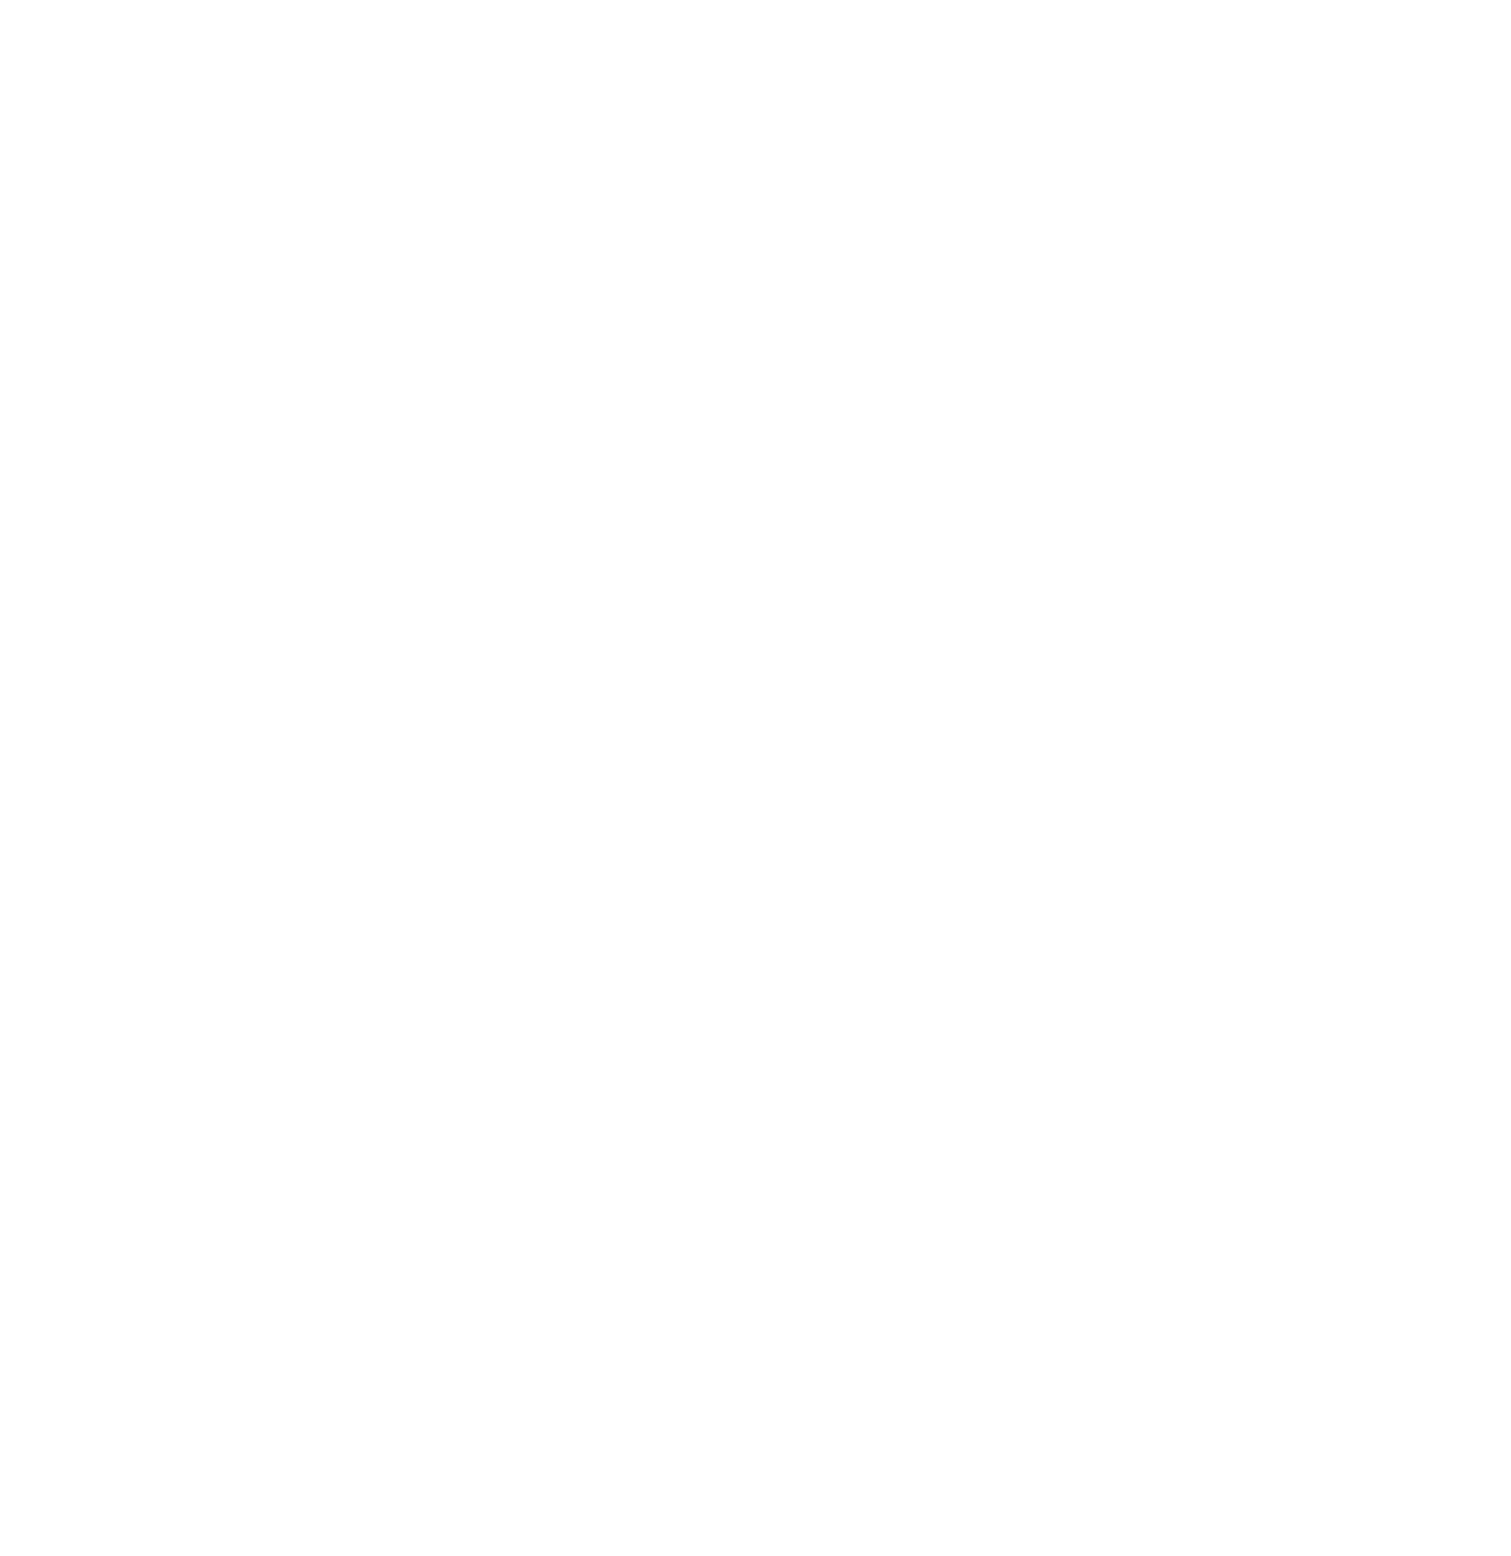 Ecovyst logo for dark backgrounds (transparent PNG)